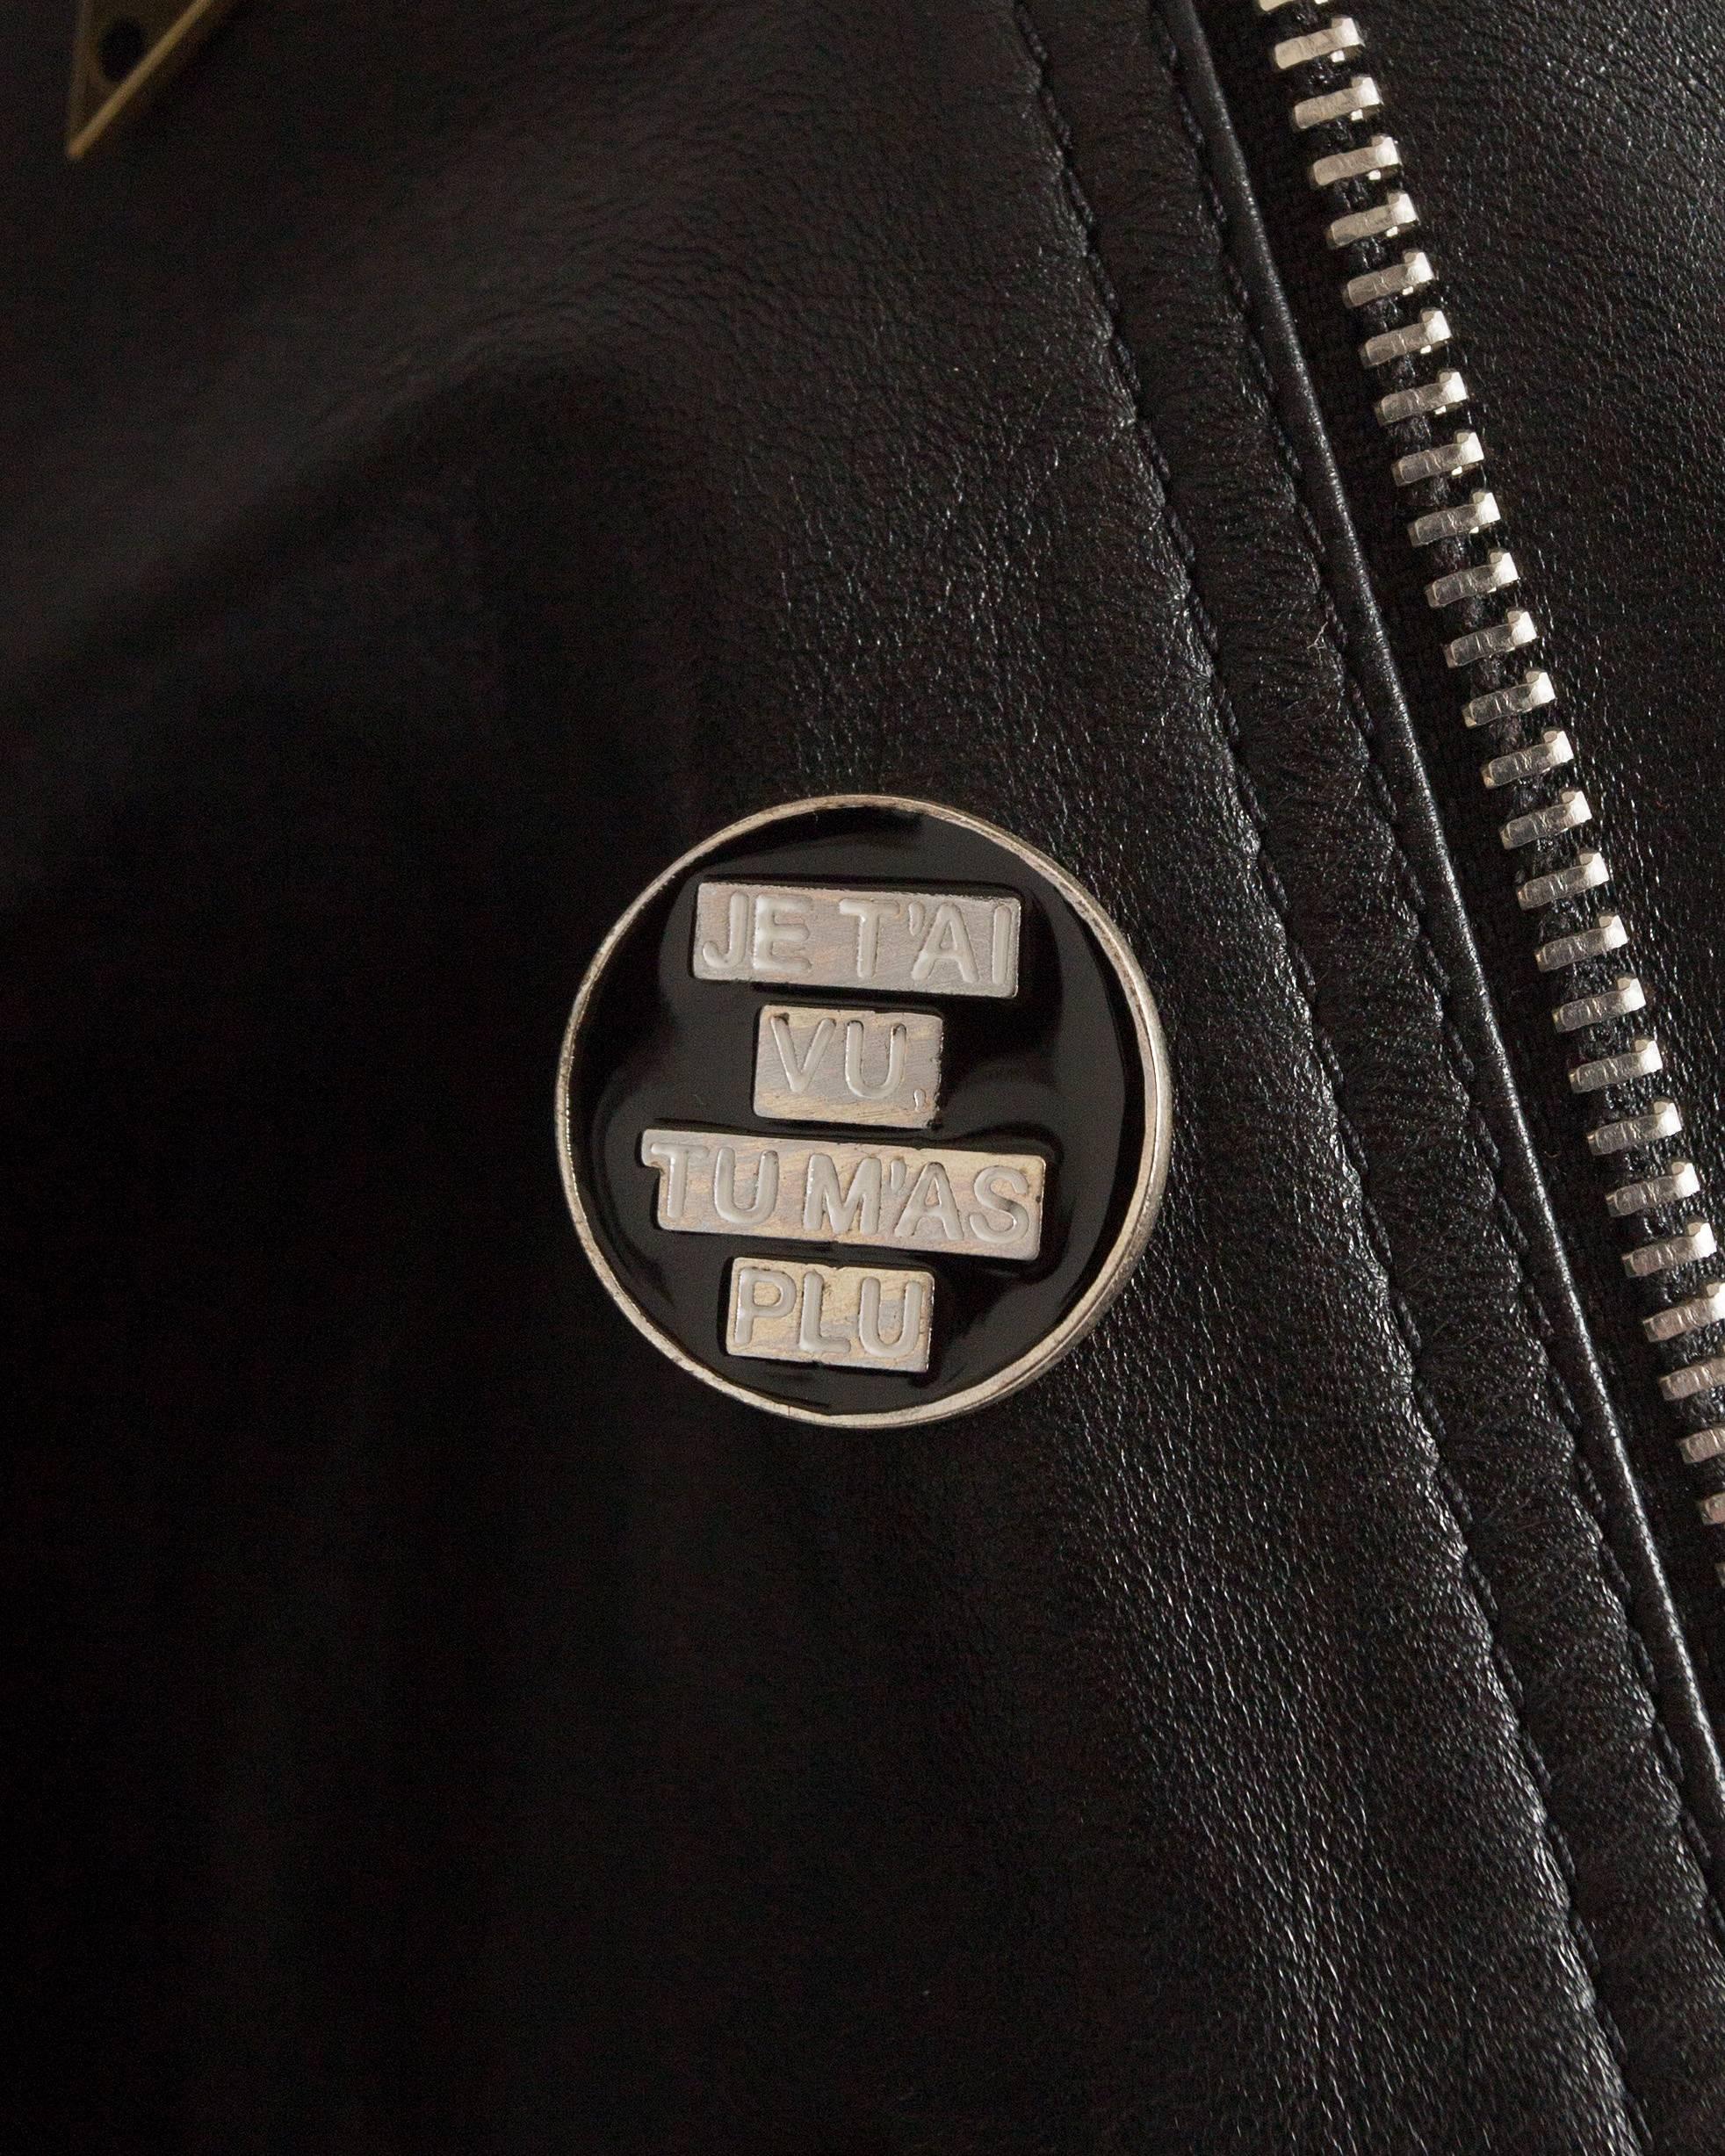 Saint Laurent by Hedi Slimane black leather biker jacket with badges , AW 2015 1